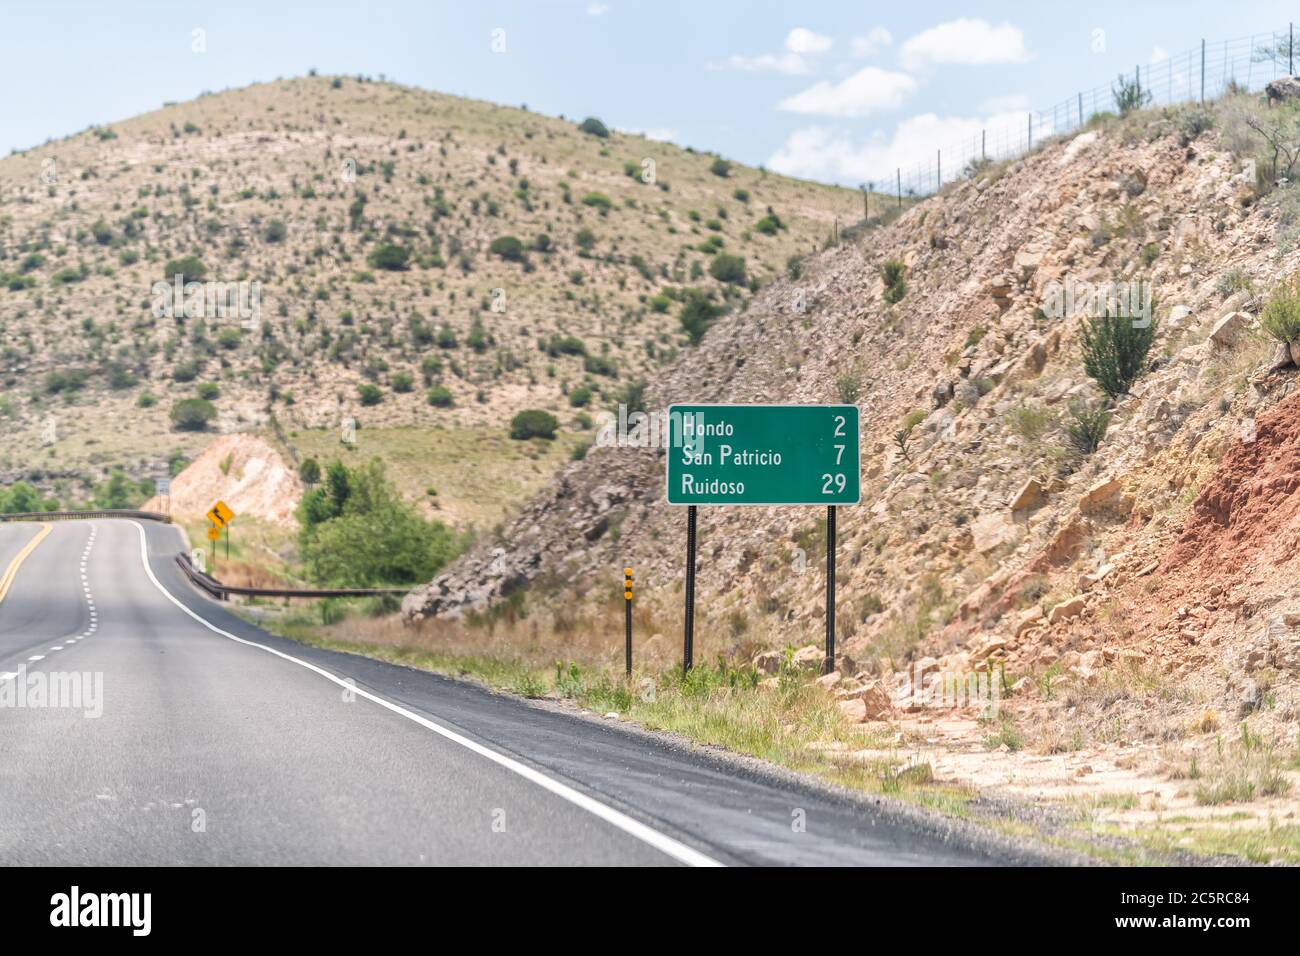 Nouveau Mexique, États-Unis campagne route rurale vue depuis 380 autoroute avec paysage désertique et panneau pour Hondo, San Patricio et Ruidoso Banque D'Images